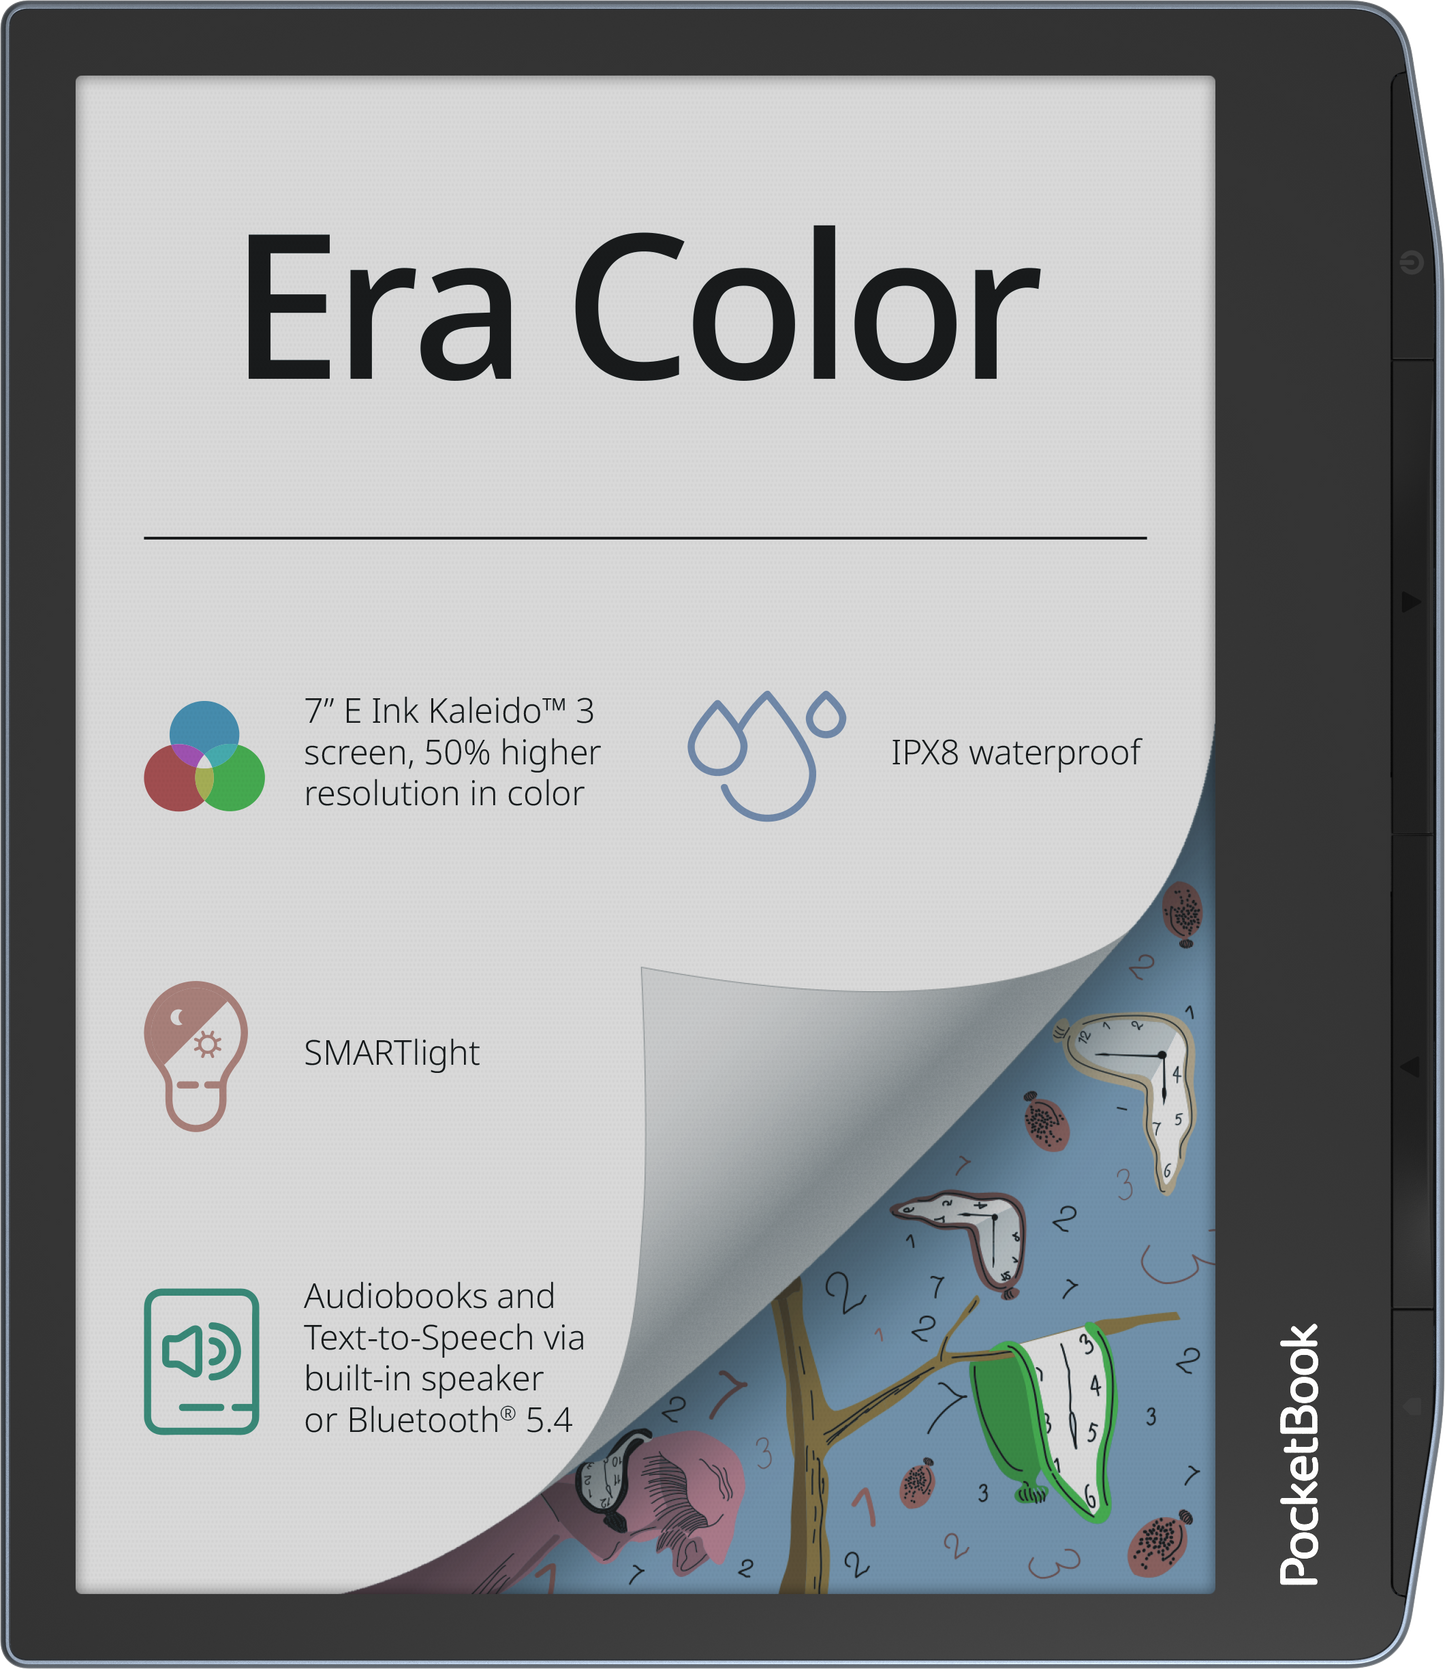 Pocketbook Era Color e-reader with Kaleido 3